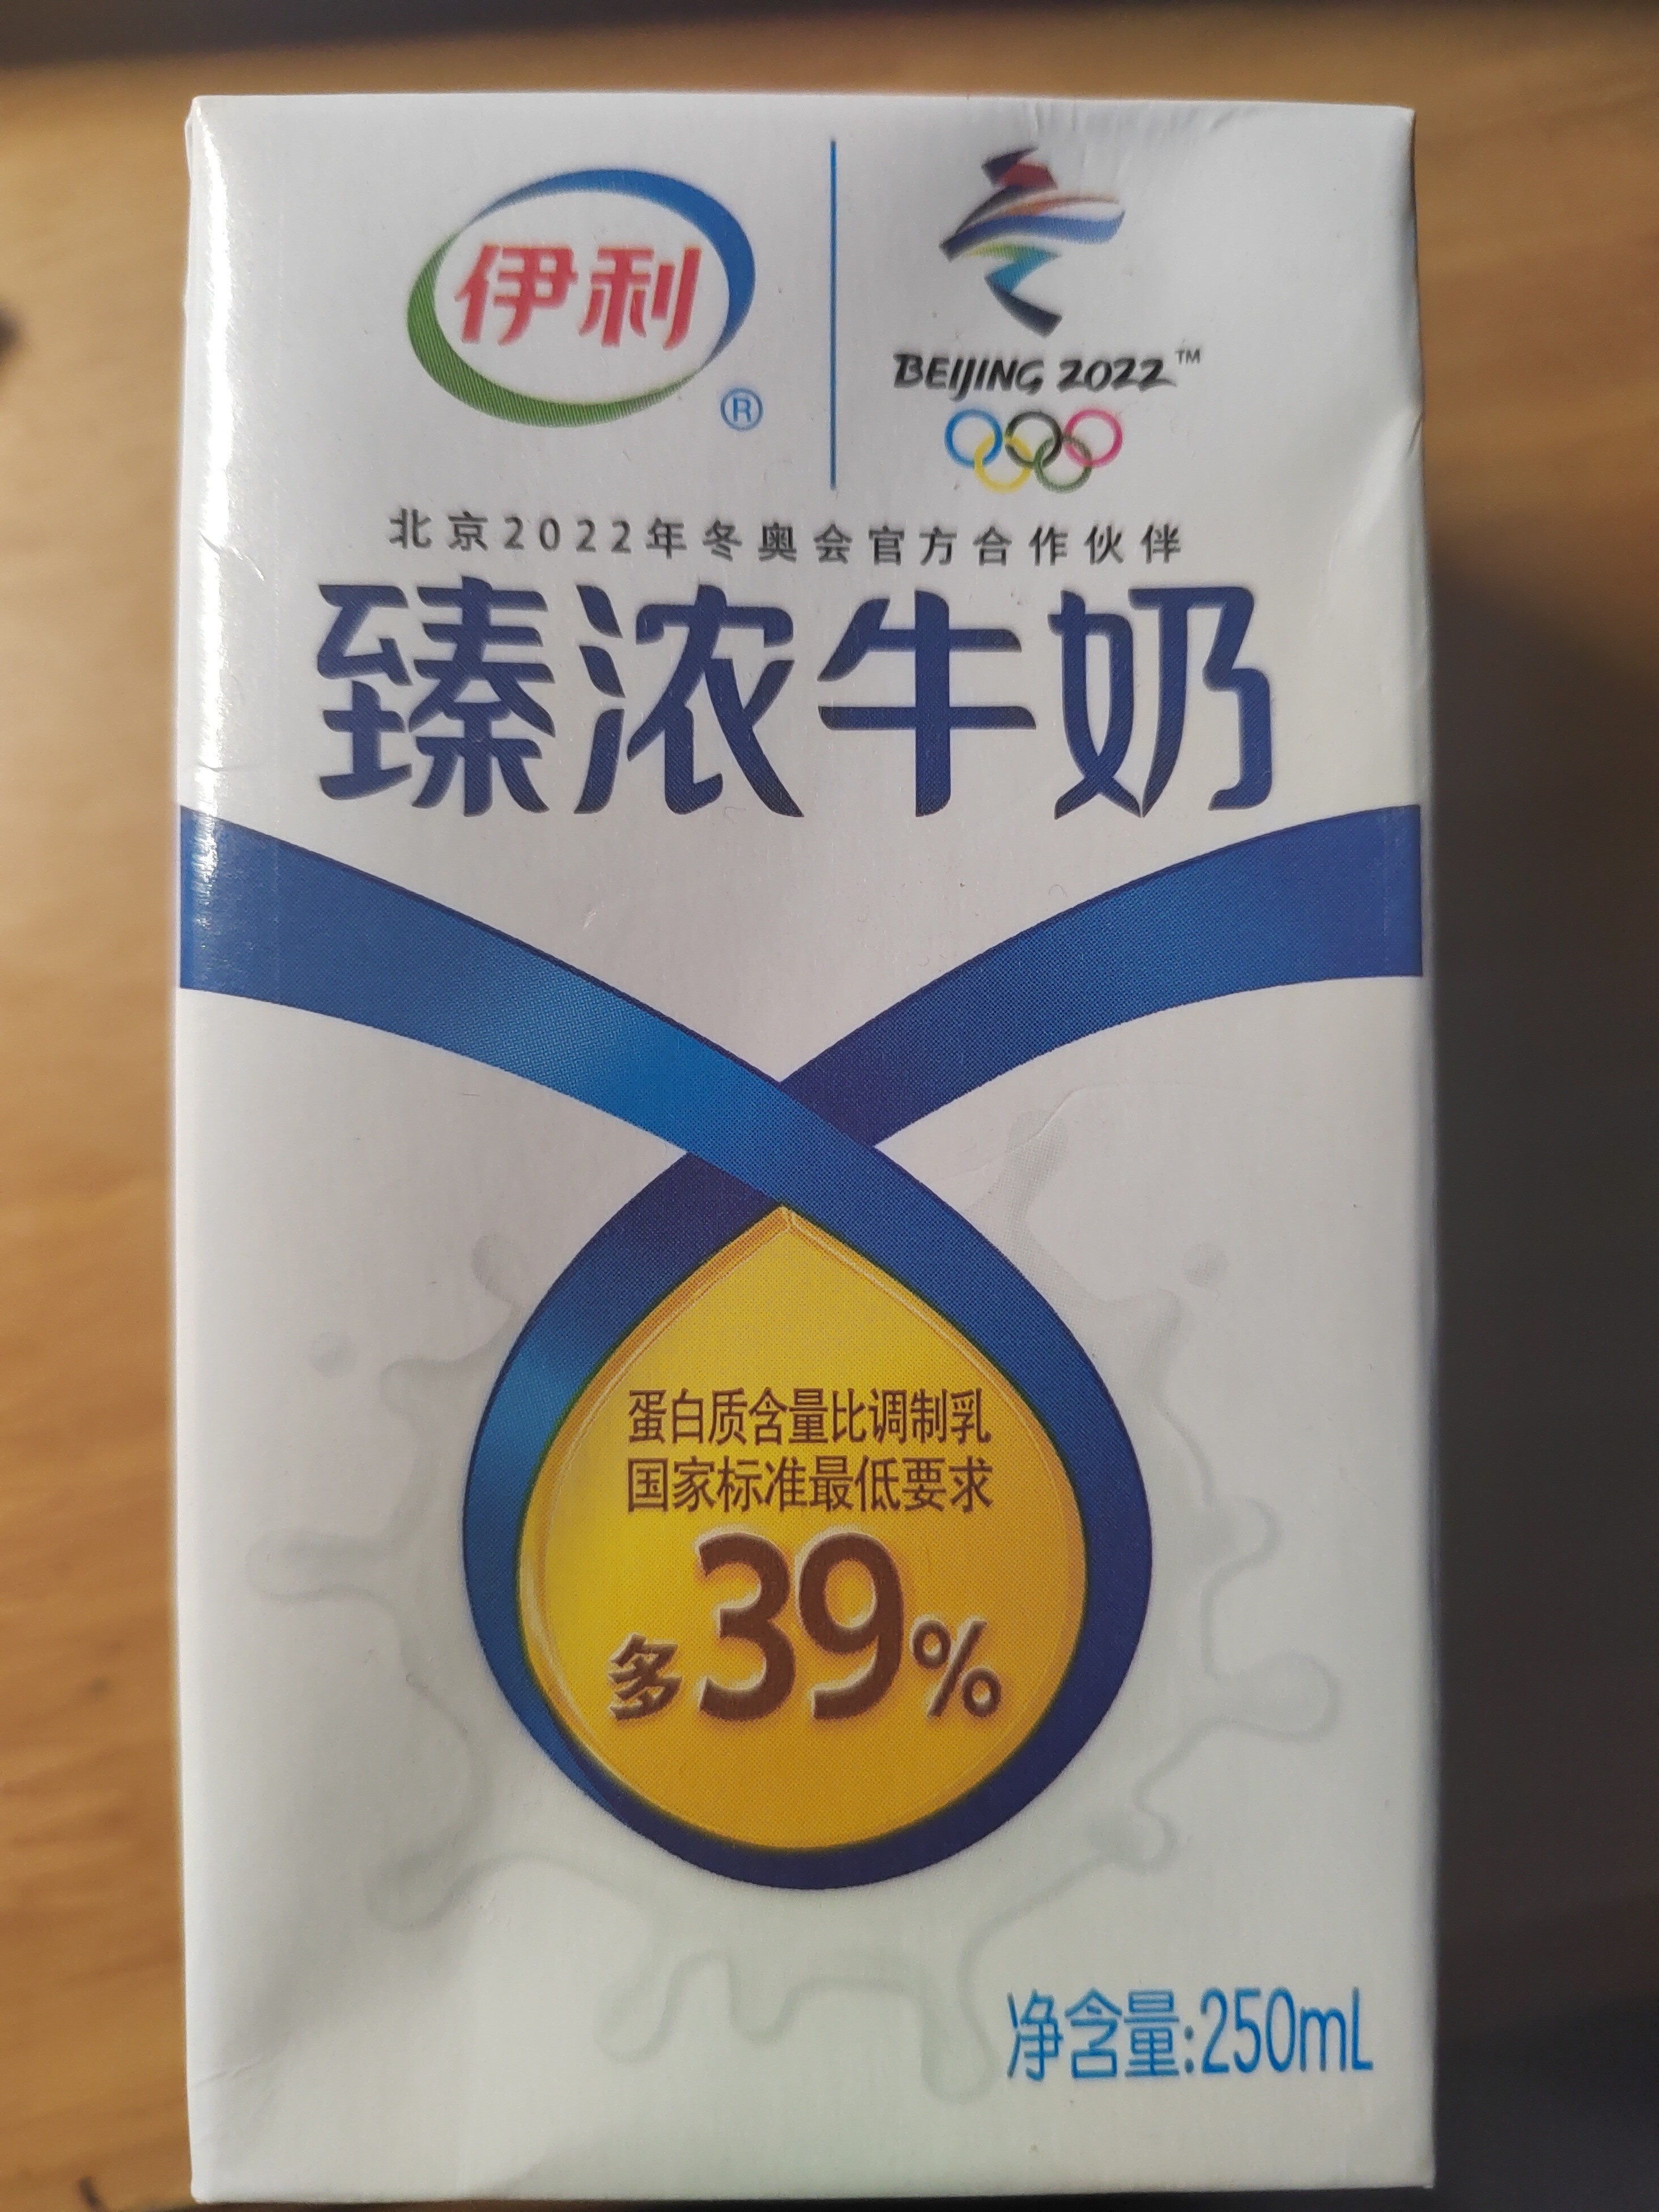 yili milk - Producto - zh